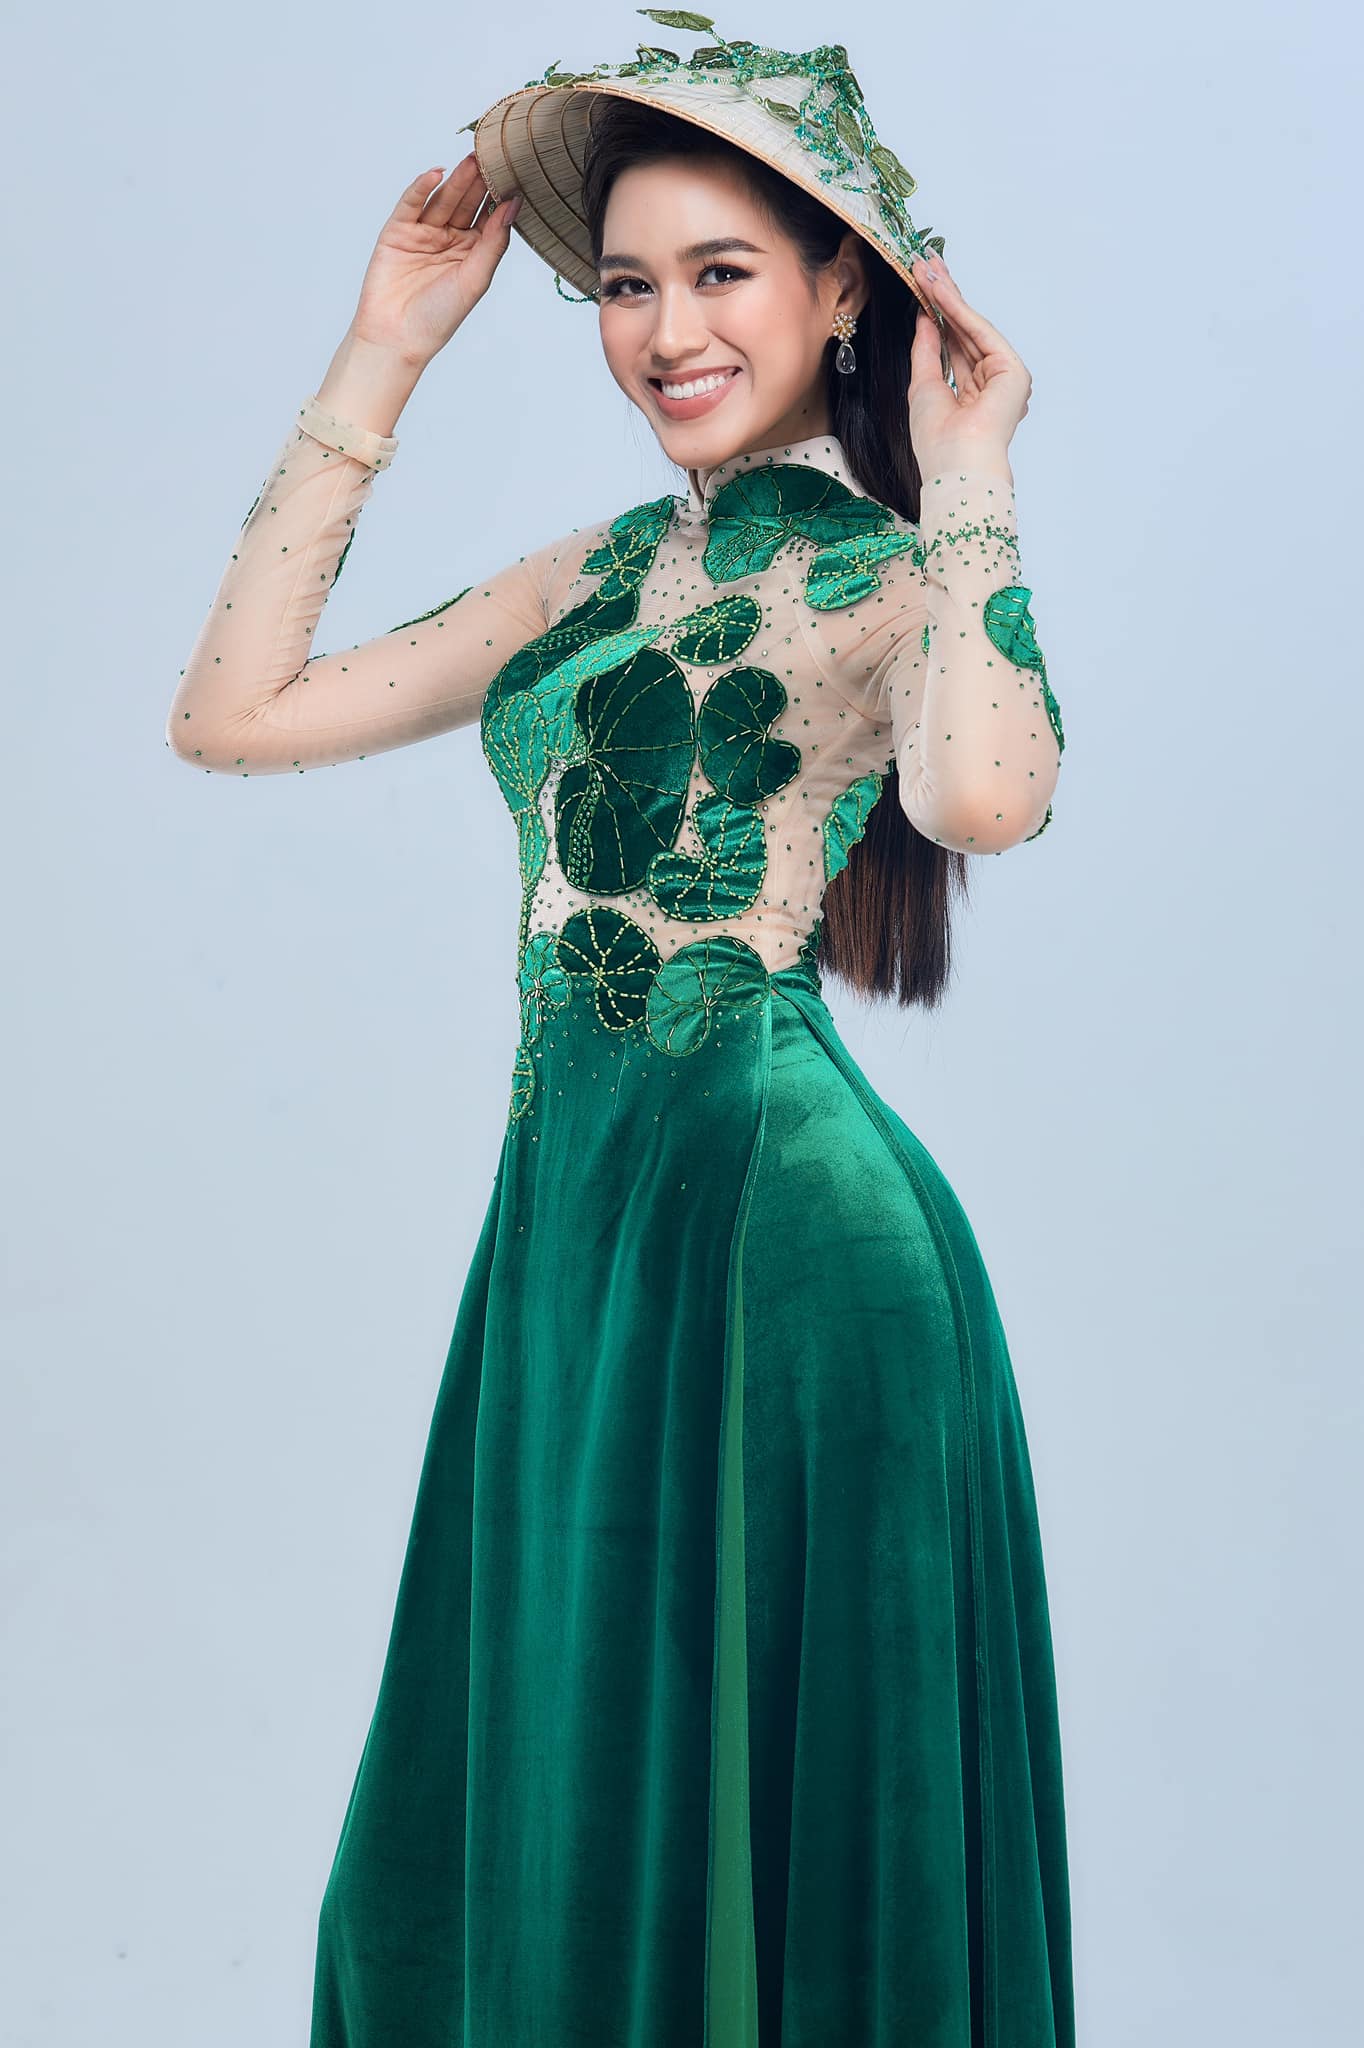 Hoa hậu Đỗ Thị Hà khiến nhiều người bất ngờ khi diện trang phục áo dài lấy cảm hứng từ rau má - đặc sản của quê hương